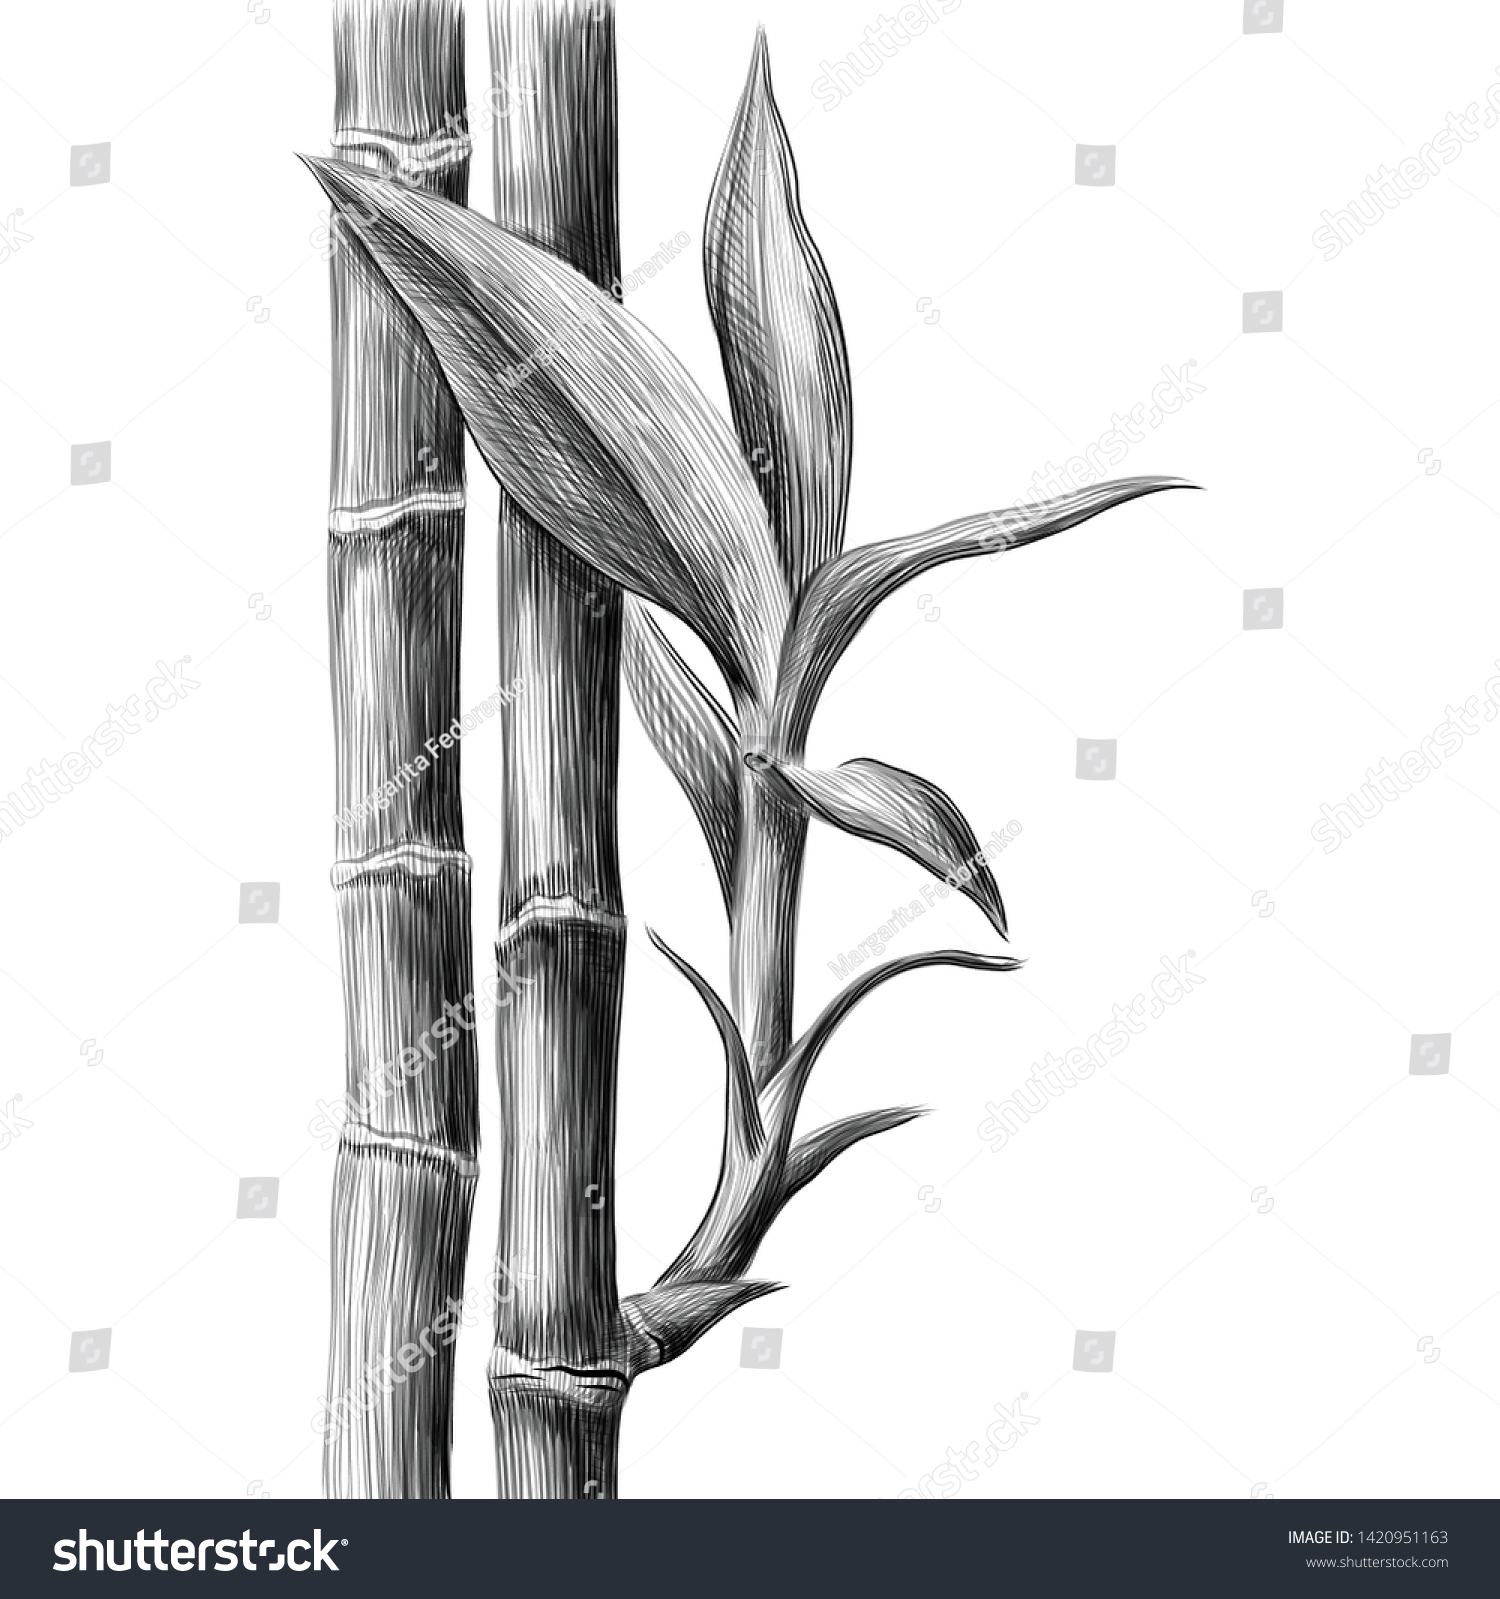 Стебель бамбука эскиз